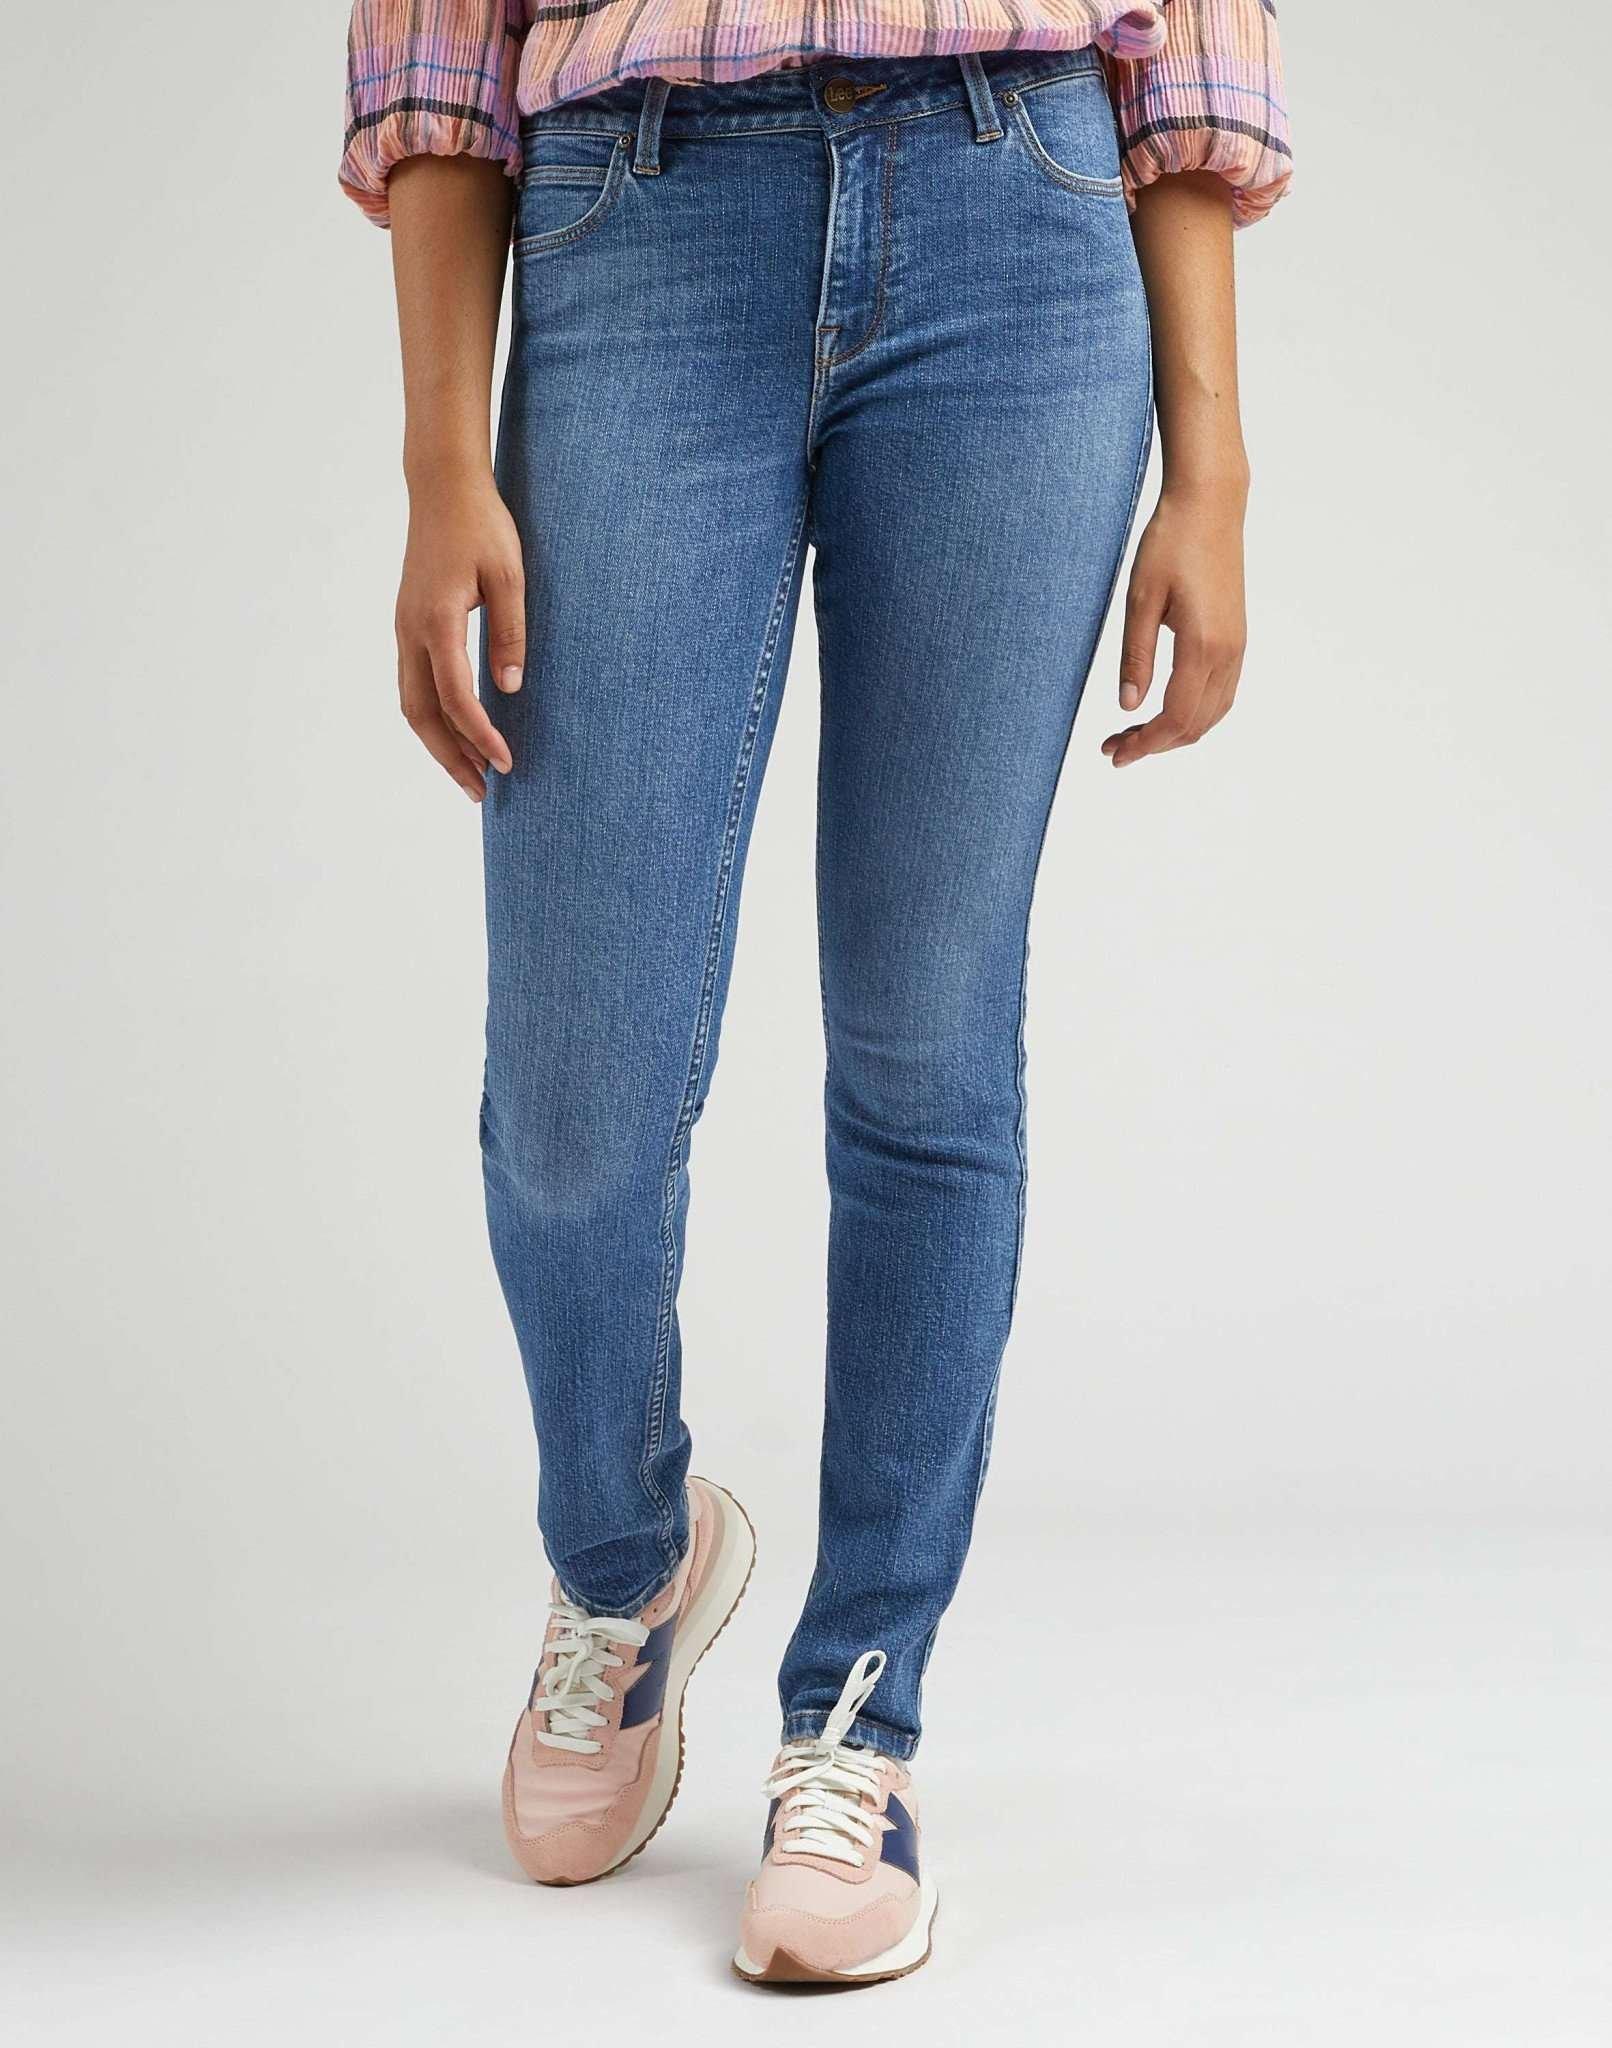 Jeans Slim Fit Elly Damen Blau L33/W30 von Lee